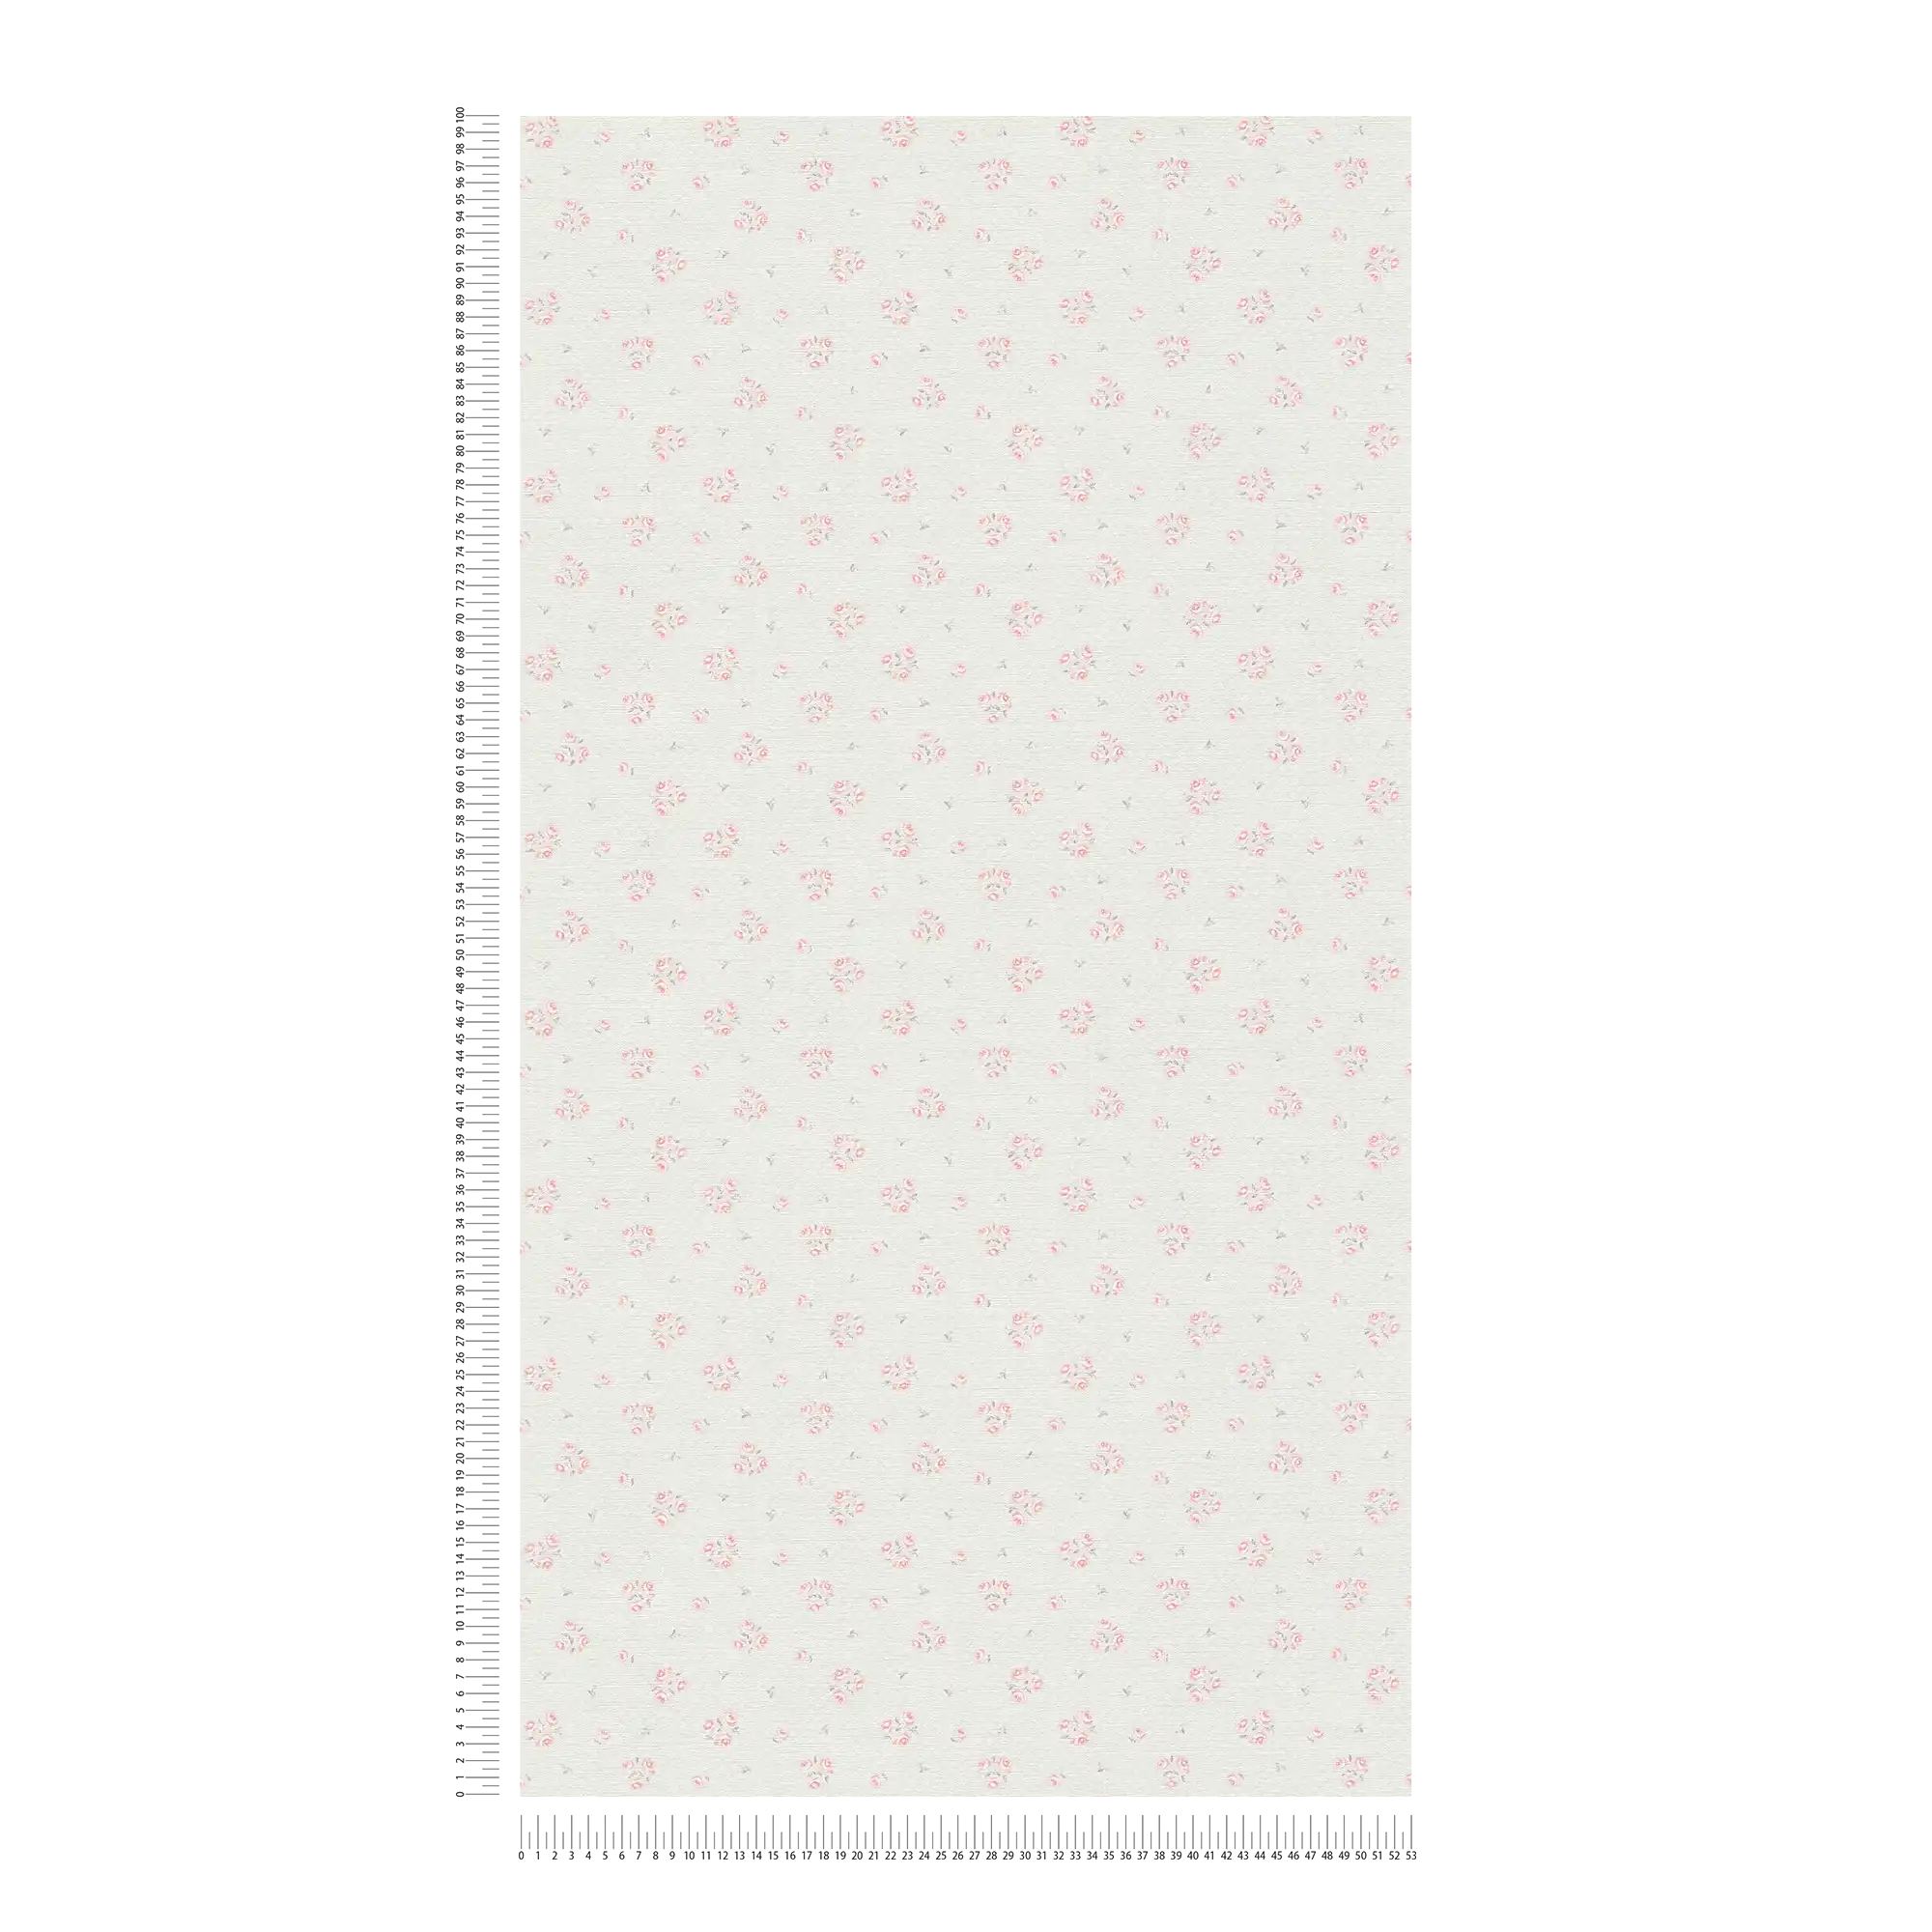             Papier peint intissé avec motif floral fin shabby chic - gris clair, rouge, blanc
        